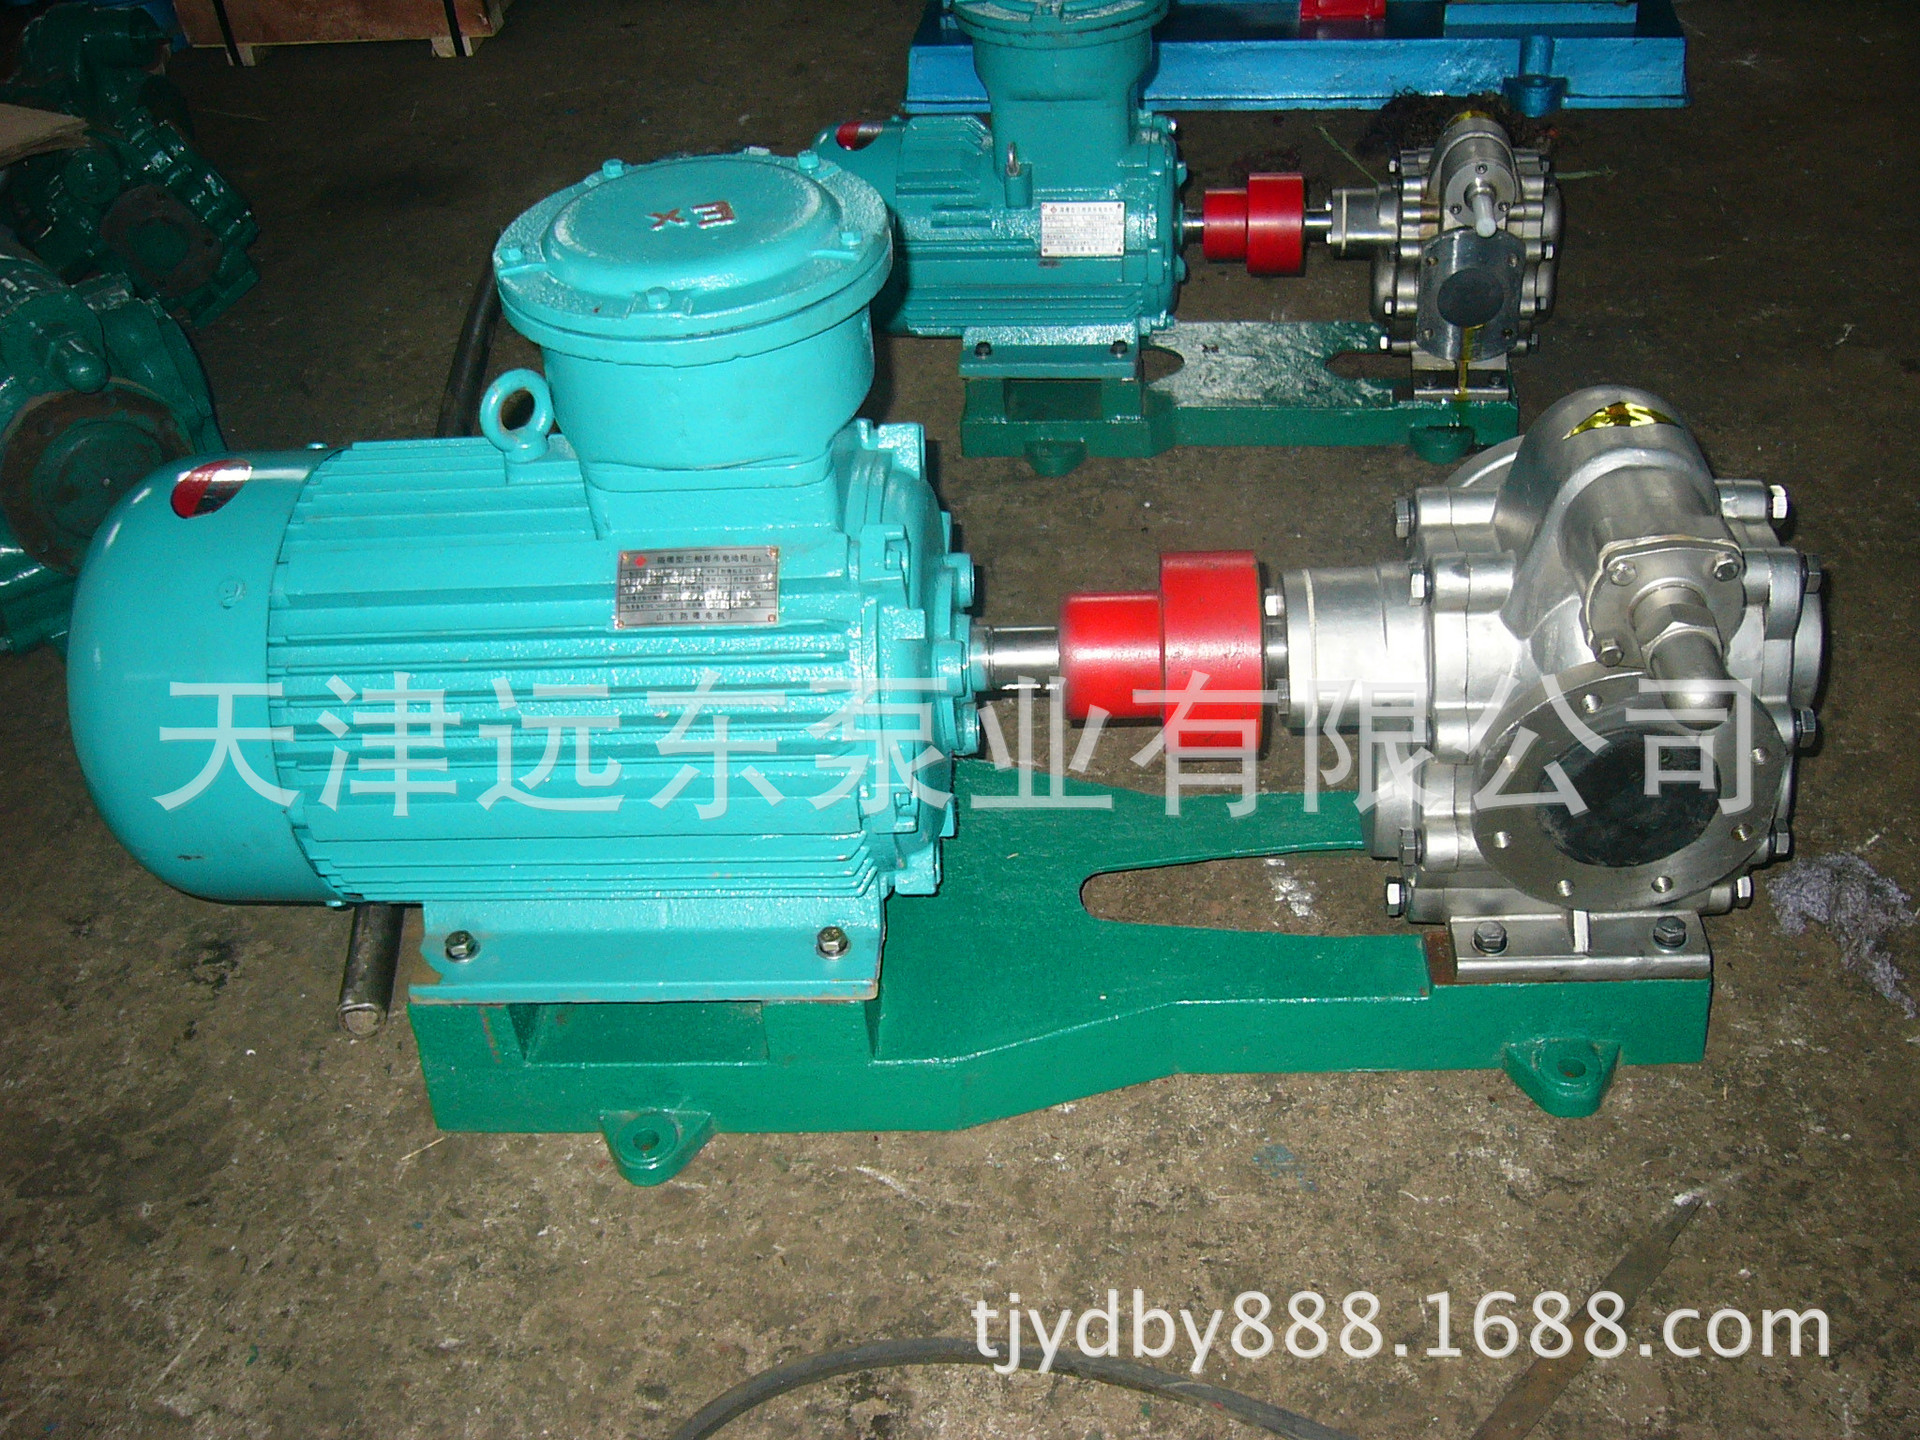 天津远东 KCB-633齿轮泵 高效率输油泵 耐腐蚀 化工溶剂泵示例图2